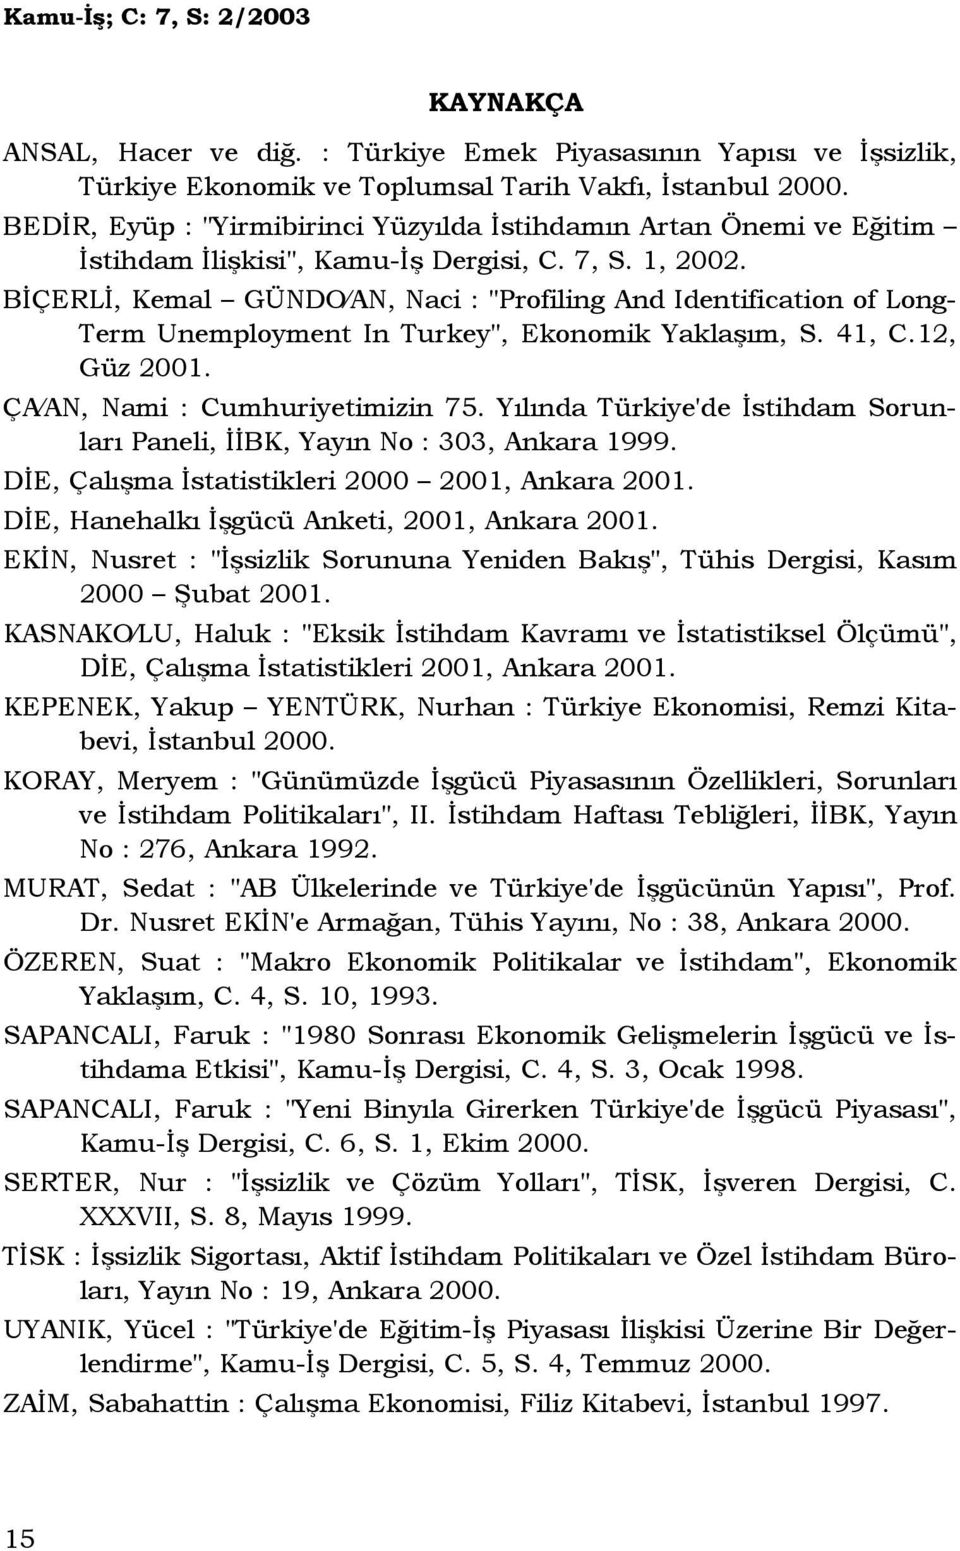 BĐÇERLĐ, Kemal GÜNDO AN, Naci : "Profiling And Identification of Long- Term Unemployment In Turkey", Ekonomik Yaklaşım, S. 41, C.12, Güz 2001. ÇA AN, Nami : Cumhuriyetimizin 75.